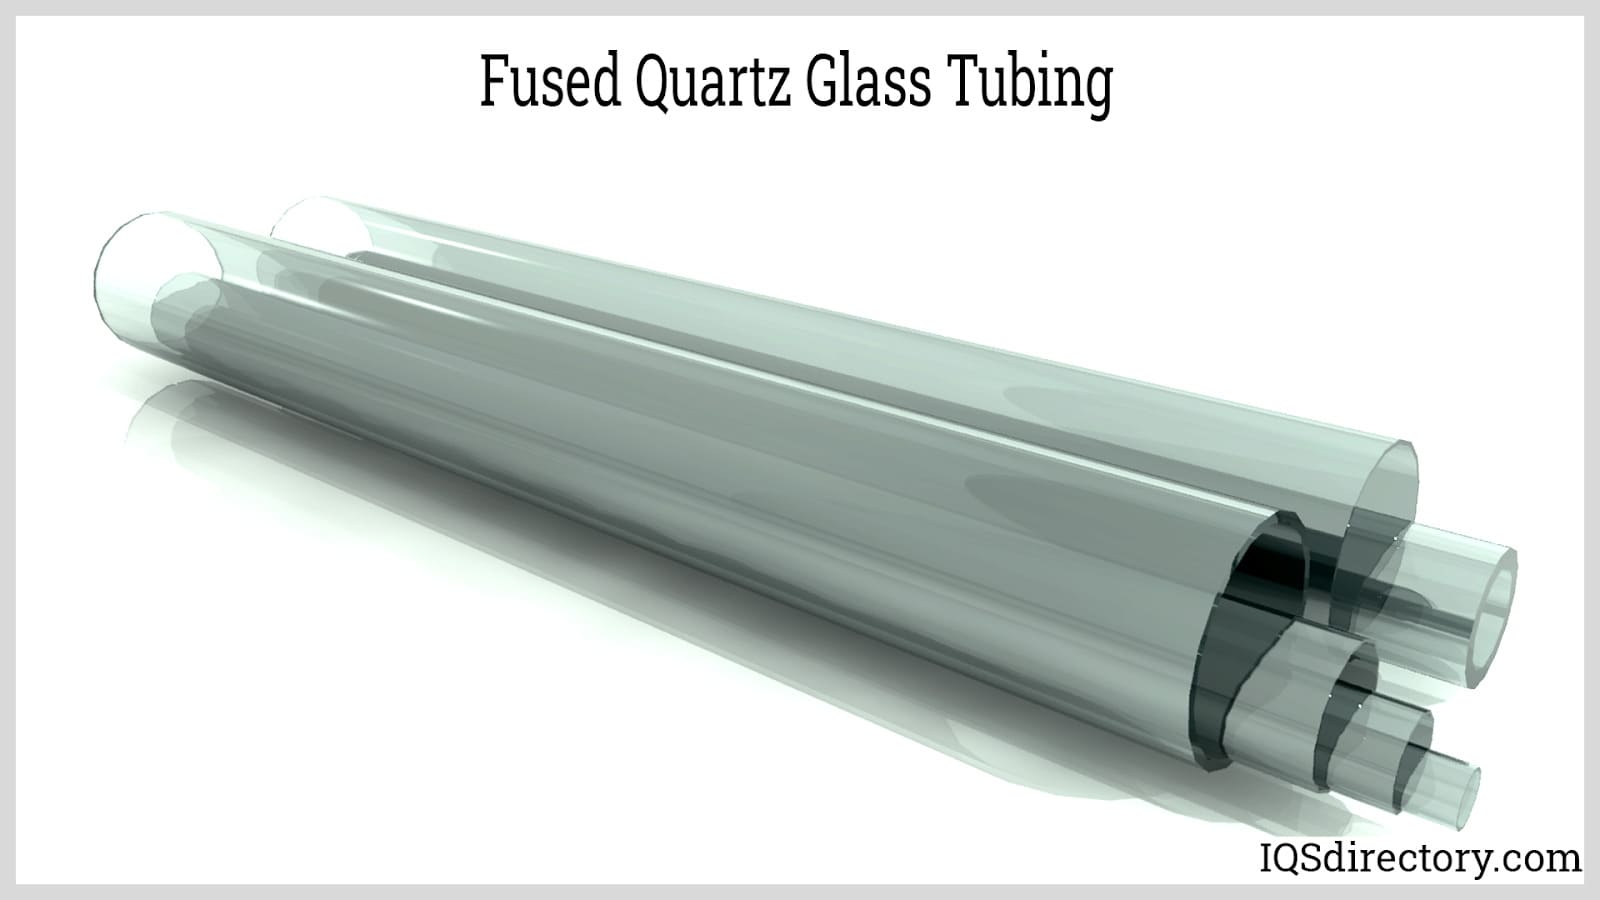 Fused Quartz Glass Tubing